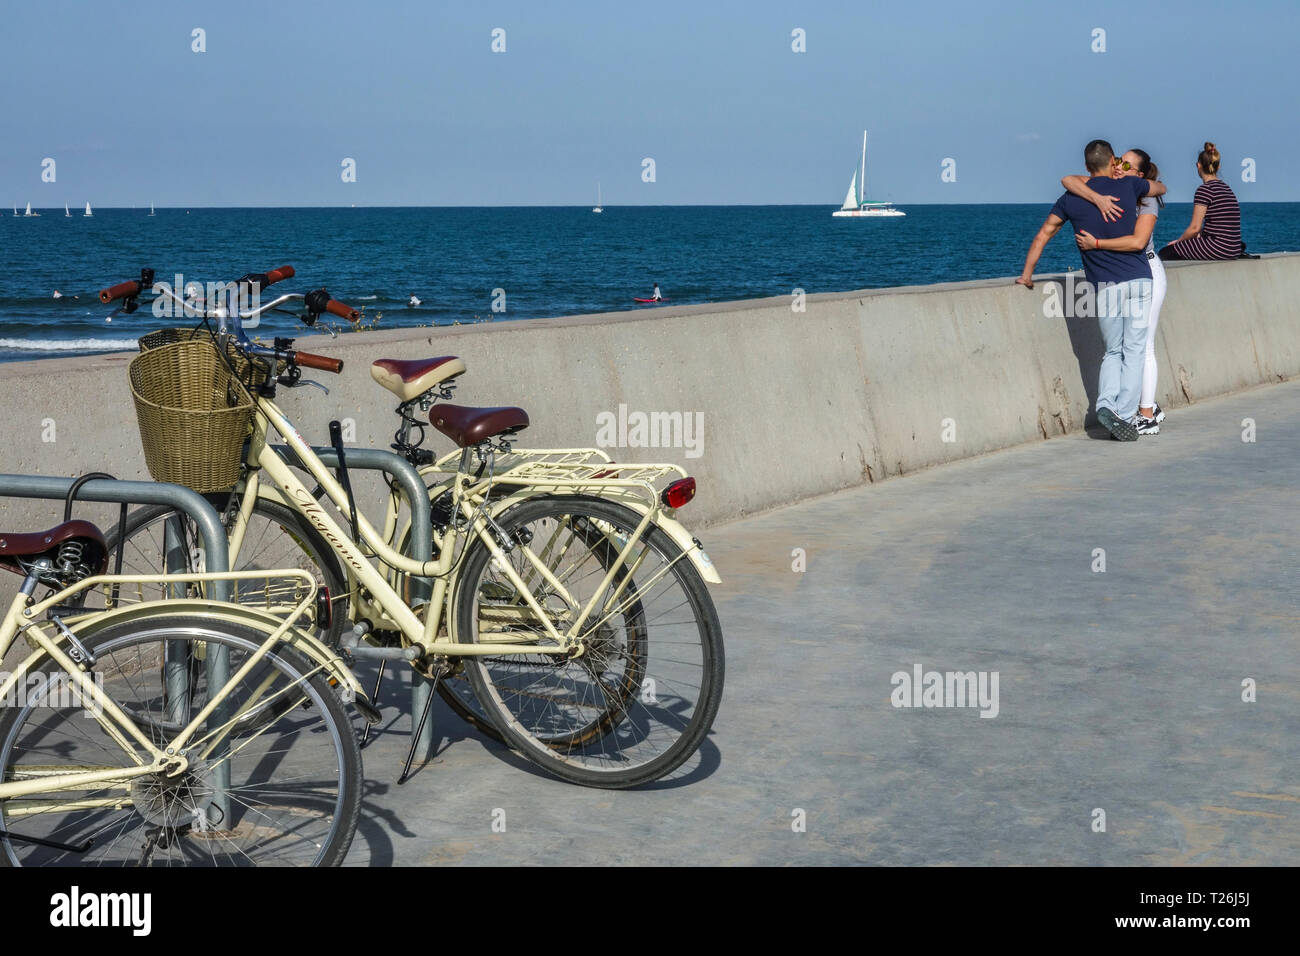 Giovani in amore giovane costeggiata sul molo, parcheggiato bici e barca a vela in background, Valencia Porto, Spagna Foto Stock